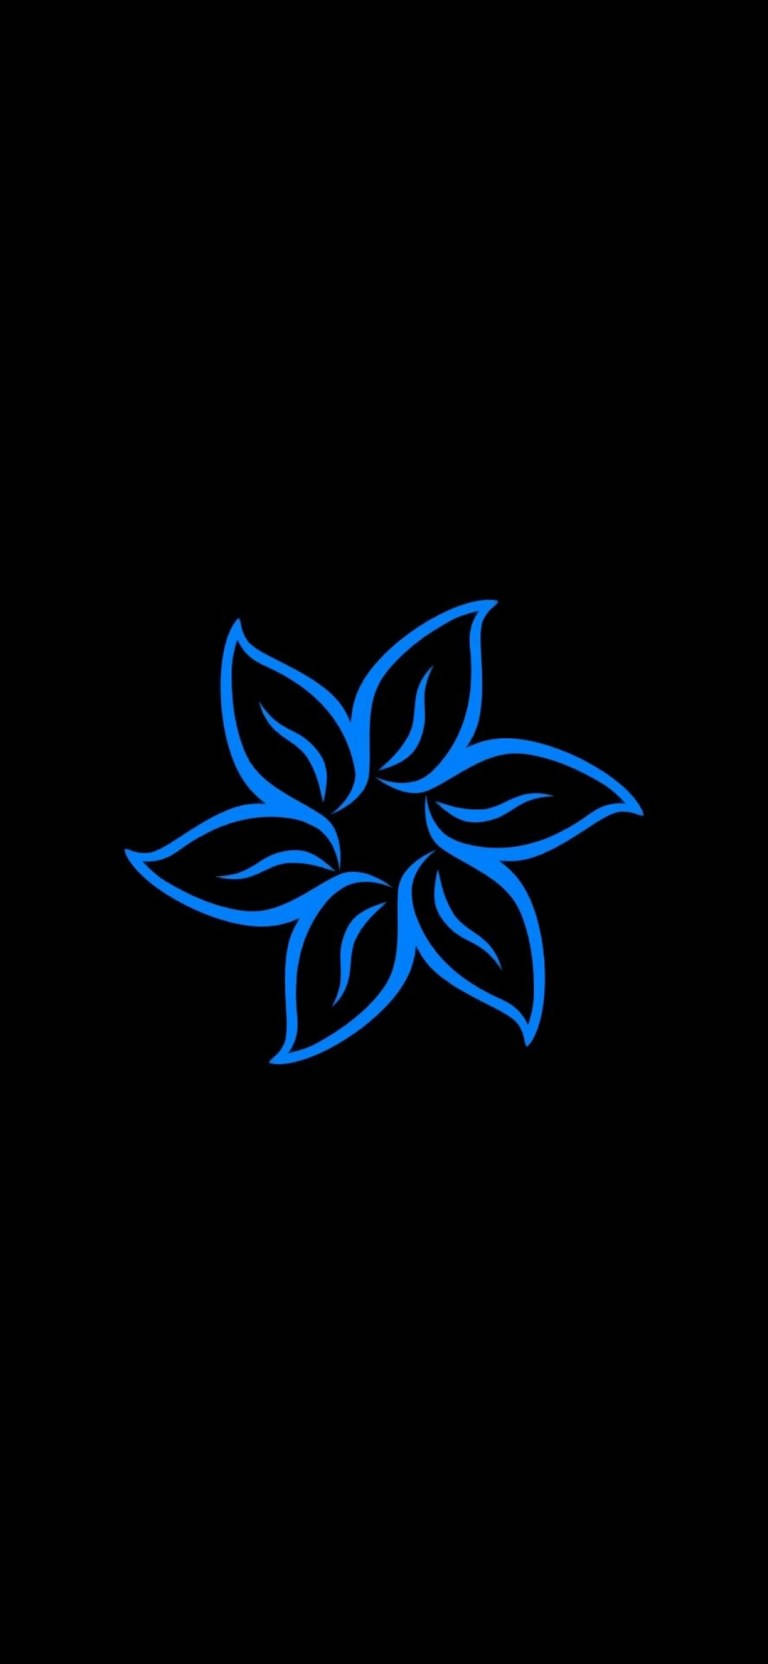 Blauesblumen-symbol Bestes Oled Wallpaper